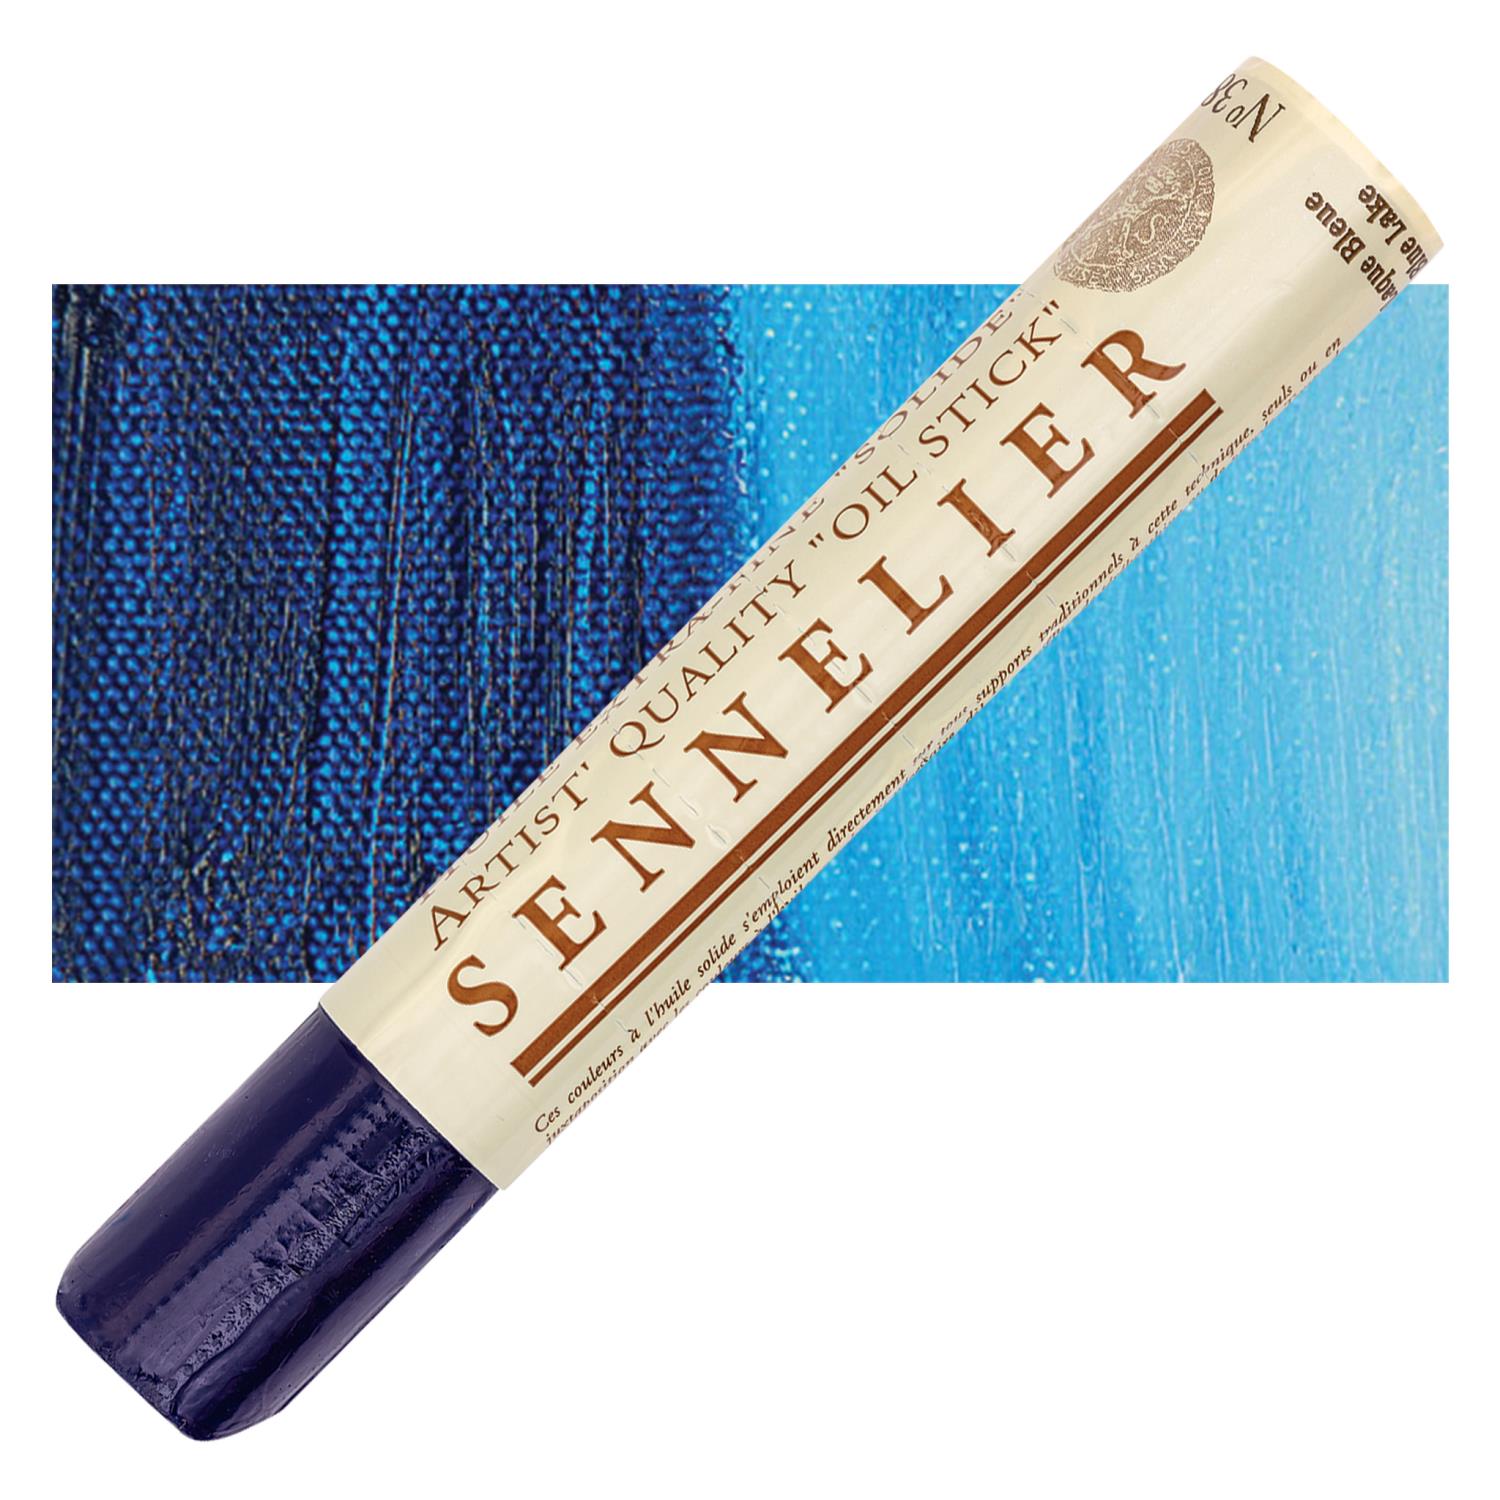 Sennelier Artist Oil Stick 38ml - 389 Blue Lake S1 utgår